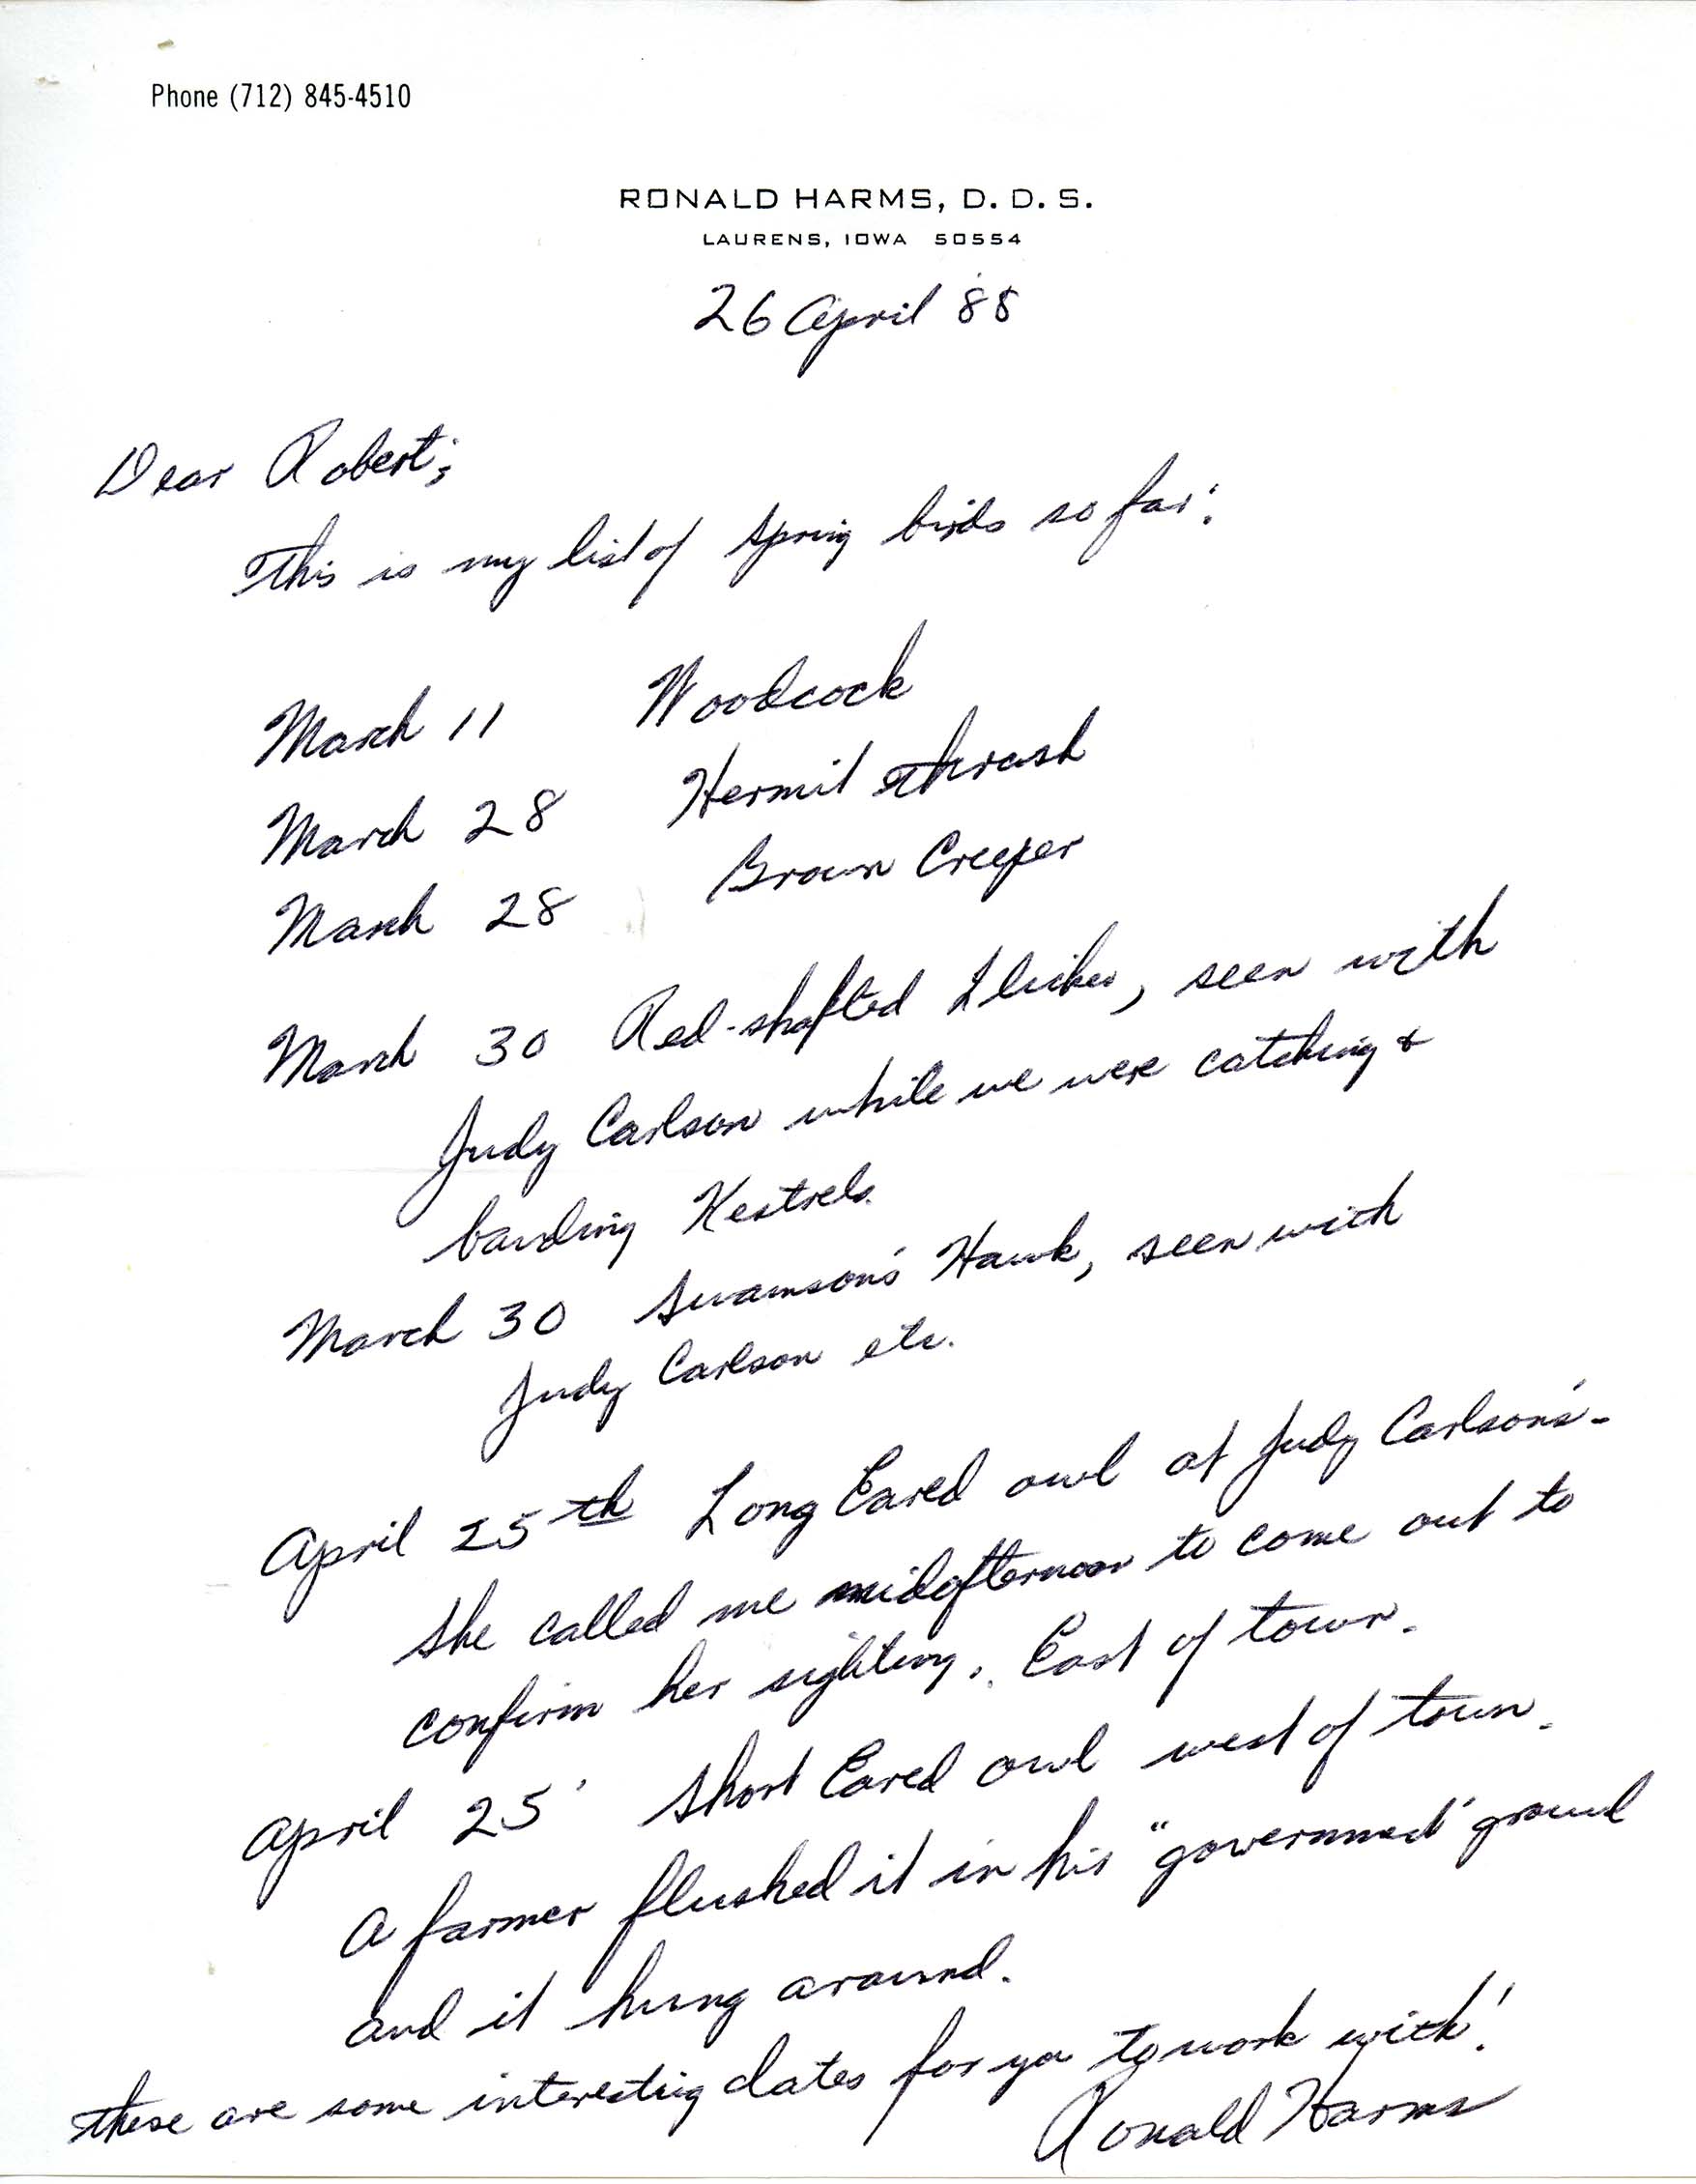 Ronald Harms letter to Robert K. Myers regarding bird sightings, April 26, 1988